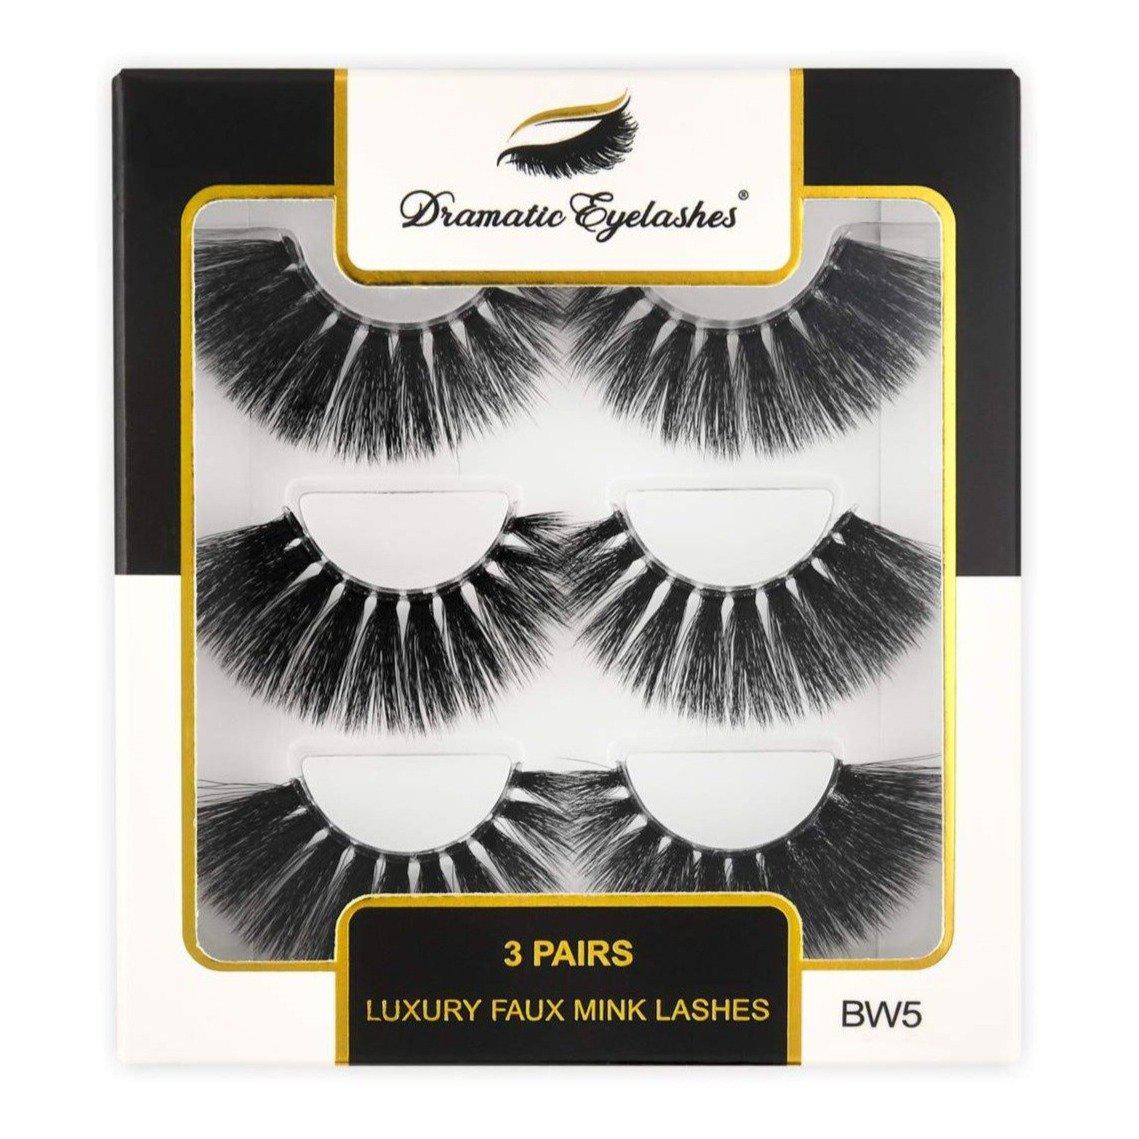 BW5: Multipack (3 Pairs) 3D Luxury Faux Mink Dramatic Eyelashes-Dramatic Eyelashes